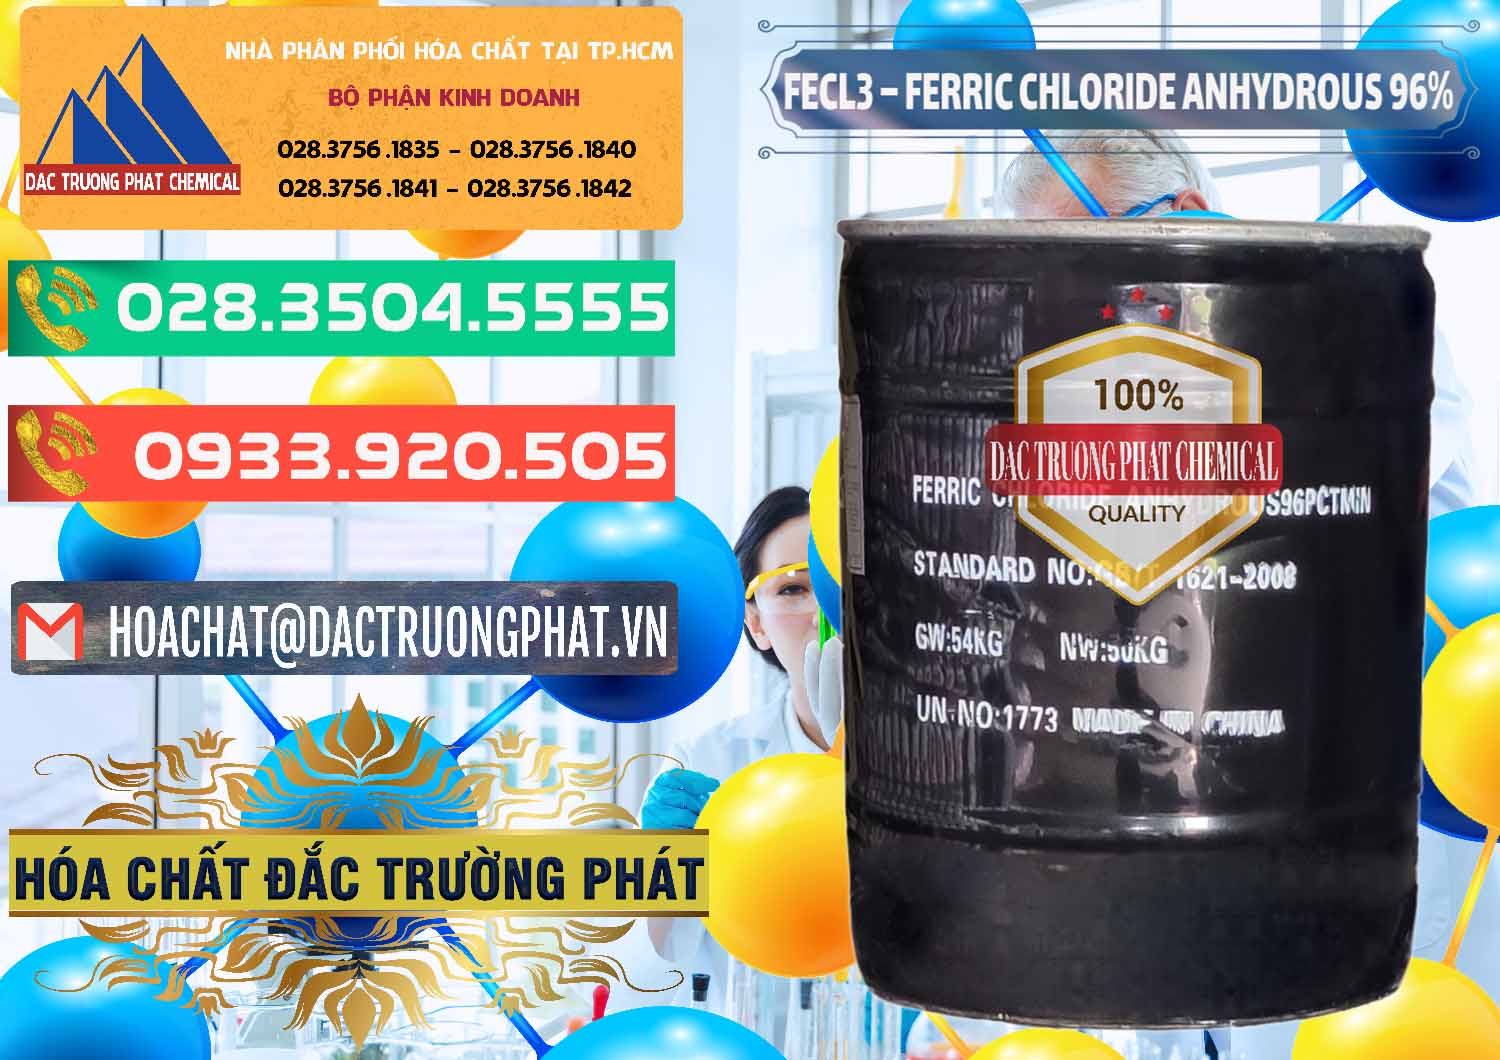 Chuyên kinh doanh _ bán FECL3 – Ferric Chloride Anhydrous 96% Trung Quốc China - 0065 - Cung ứng ( phân phối ) hóa chất tại TP.HCM - congtyhoachat.com.vn